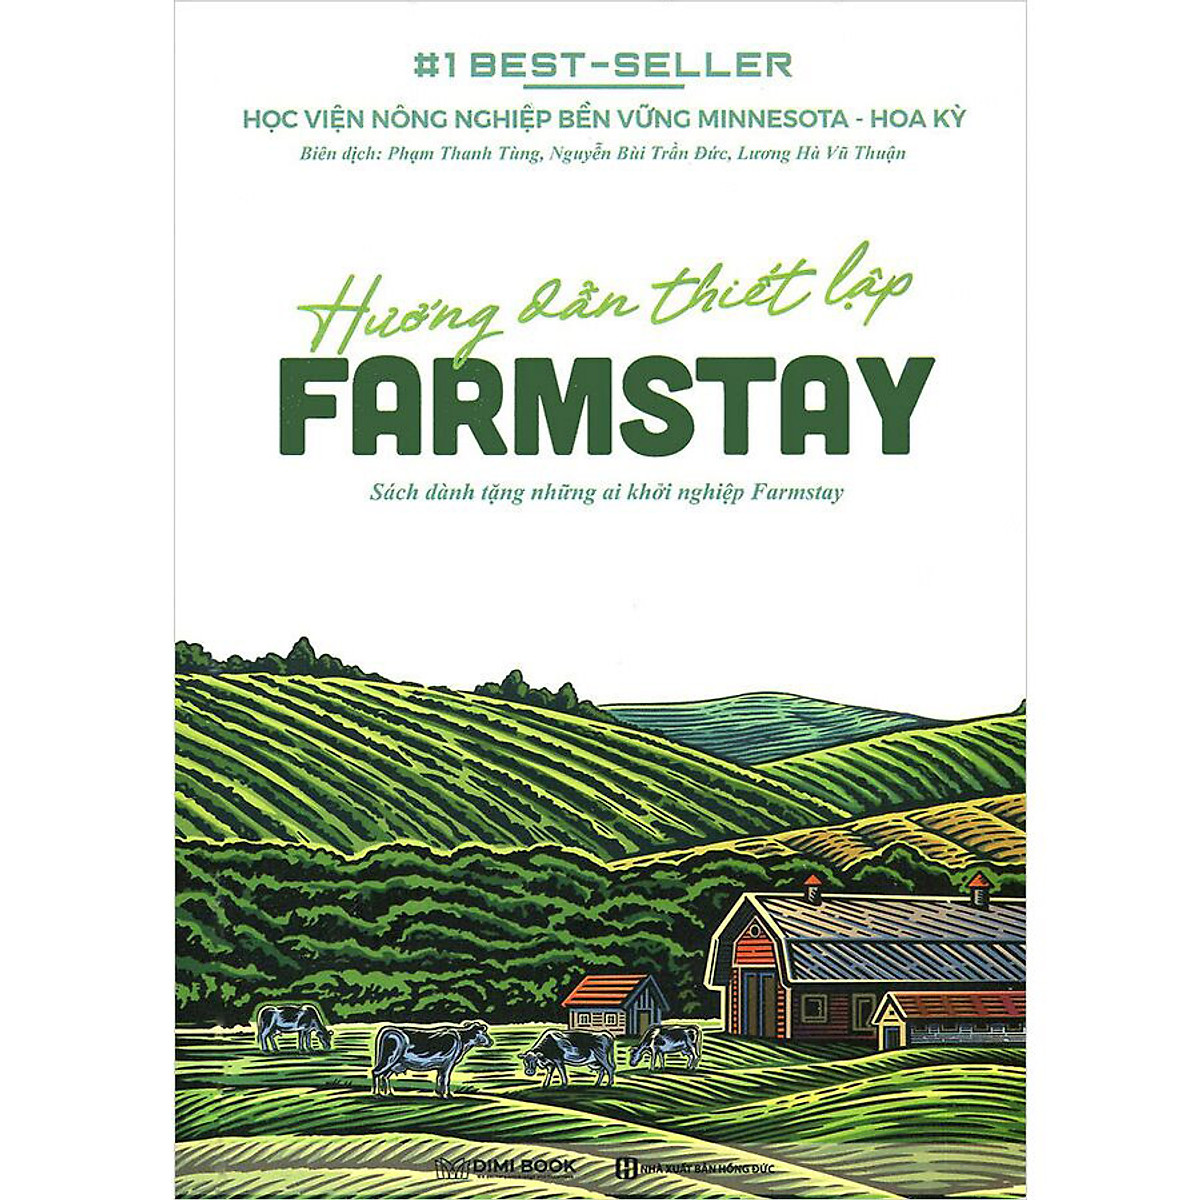 Hướng Dẫn Thiết Lập Farmstay (Sách Dành Tặng Những Ai Khởi Nghiệp Farmstay)